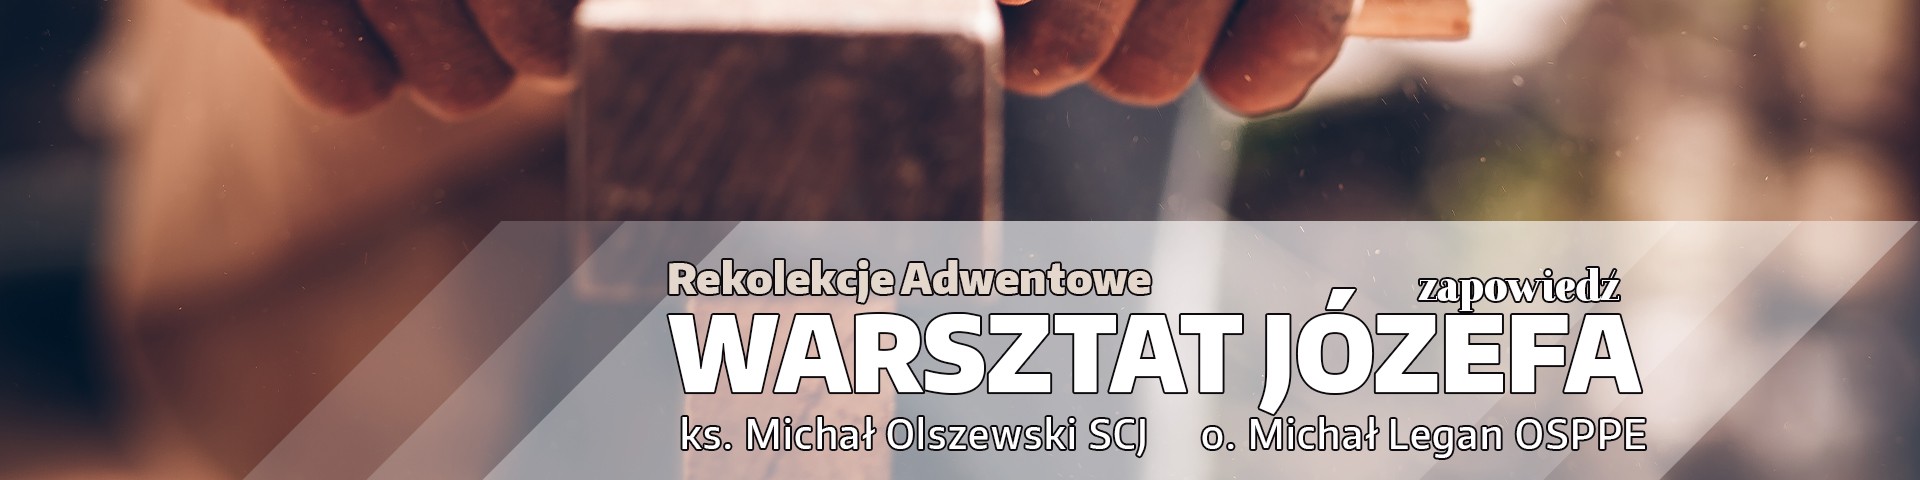 Adwentowe rekolekcje „Warsztat Józefa” – Zapowiedź – ks. Michał Olszewski SCJ i o. Michał Legan OSPPE (video)